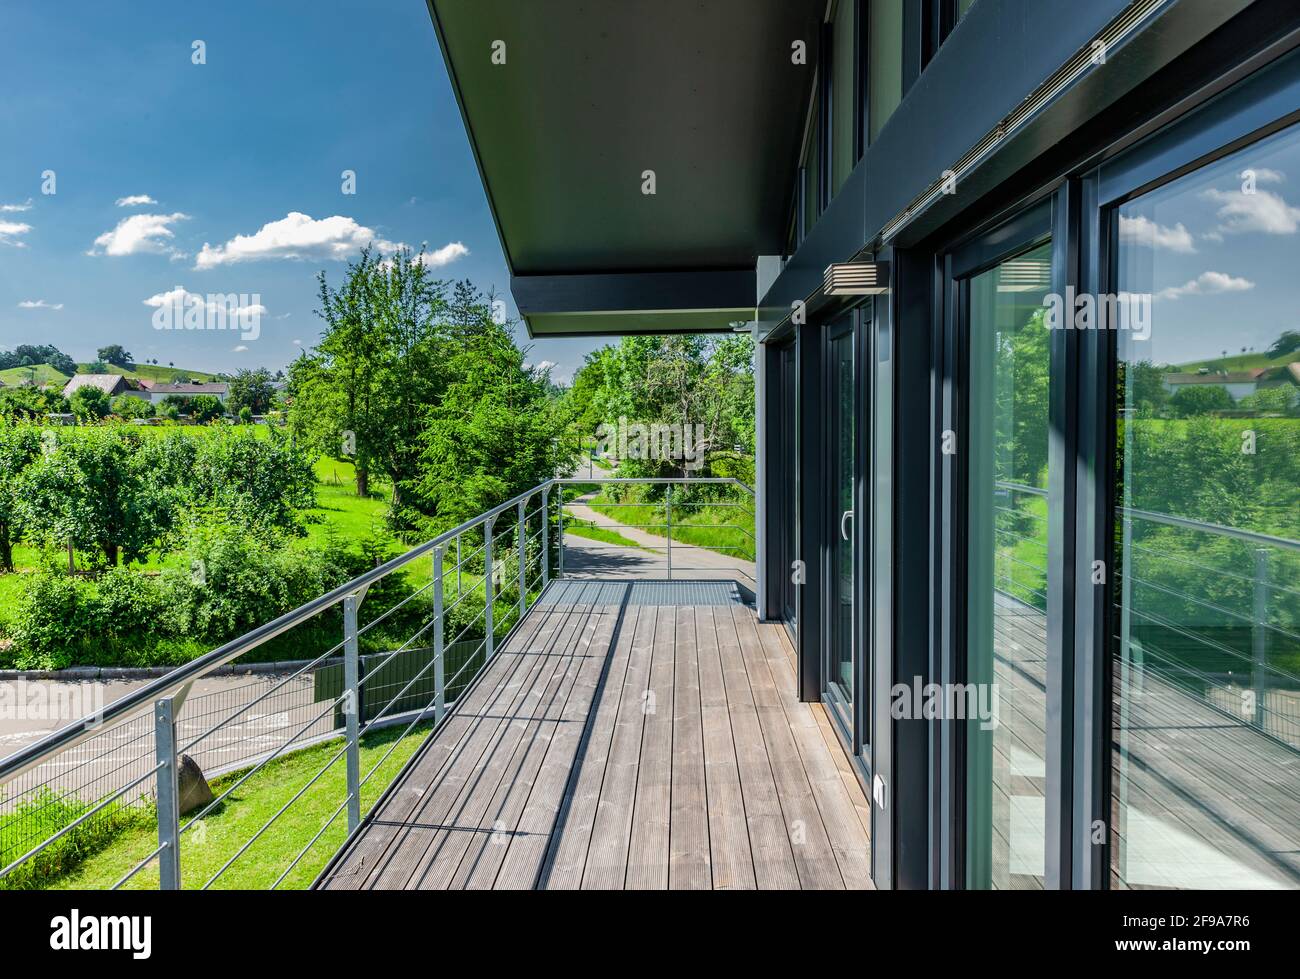 Façade vitrée avec terrasse en bois sur une maison unifamiliale dans le vert Banque D'Images